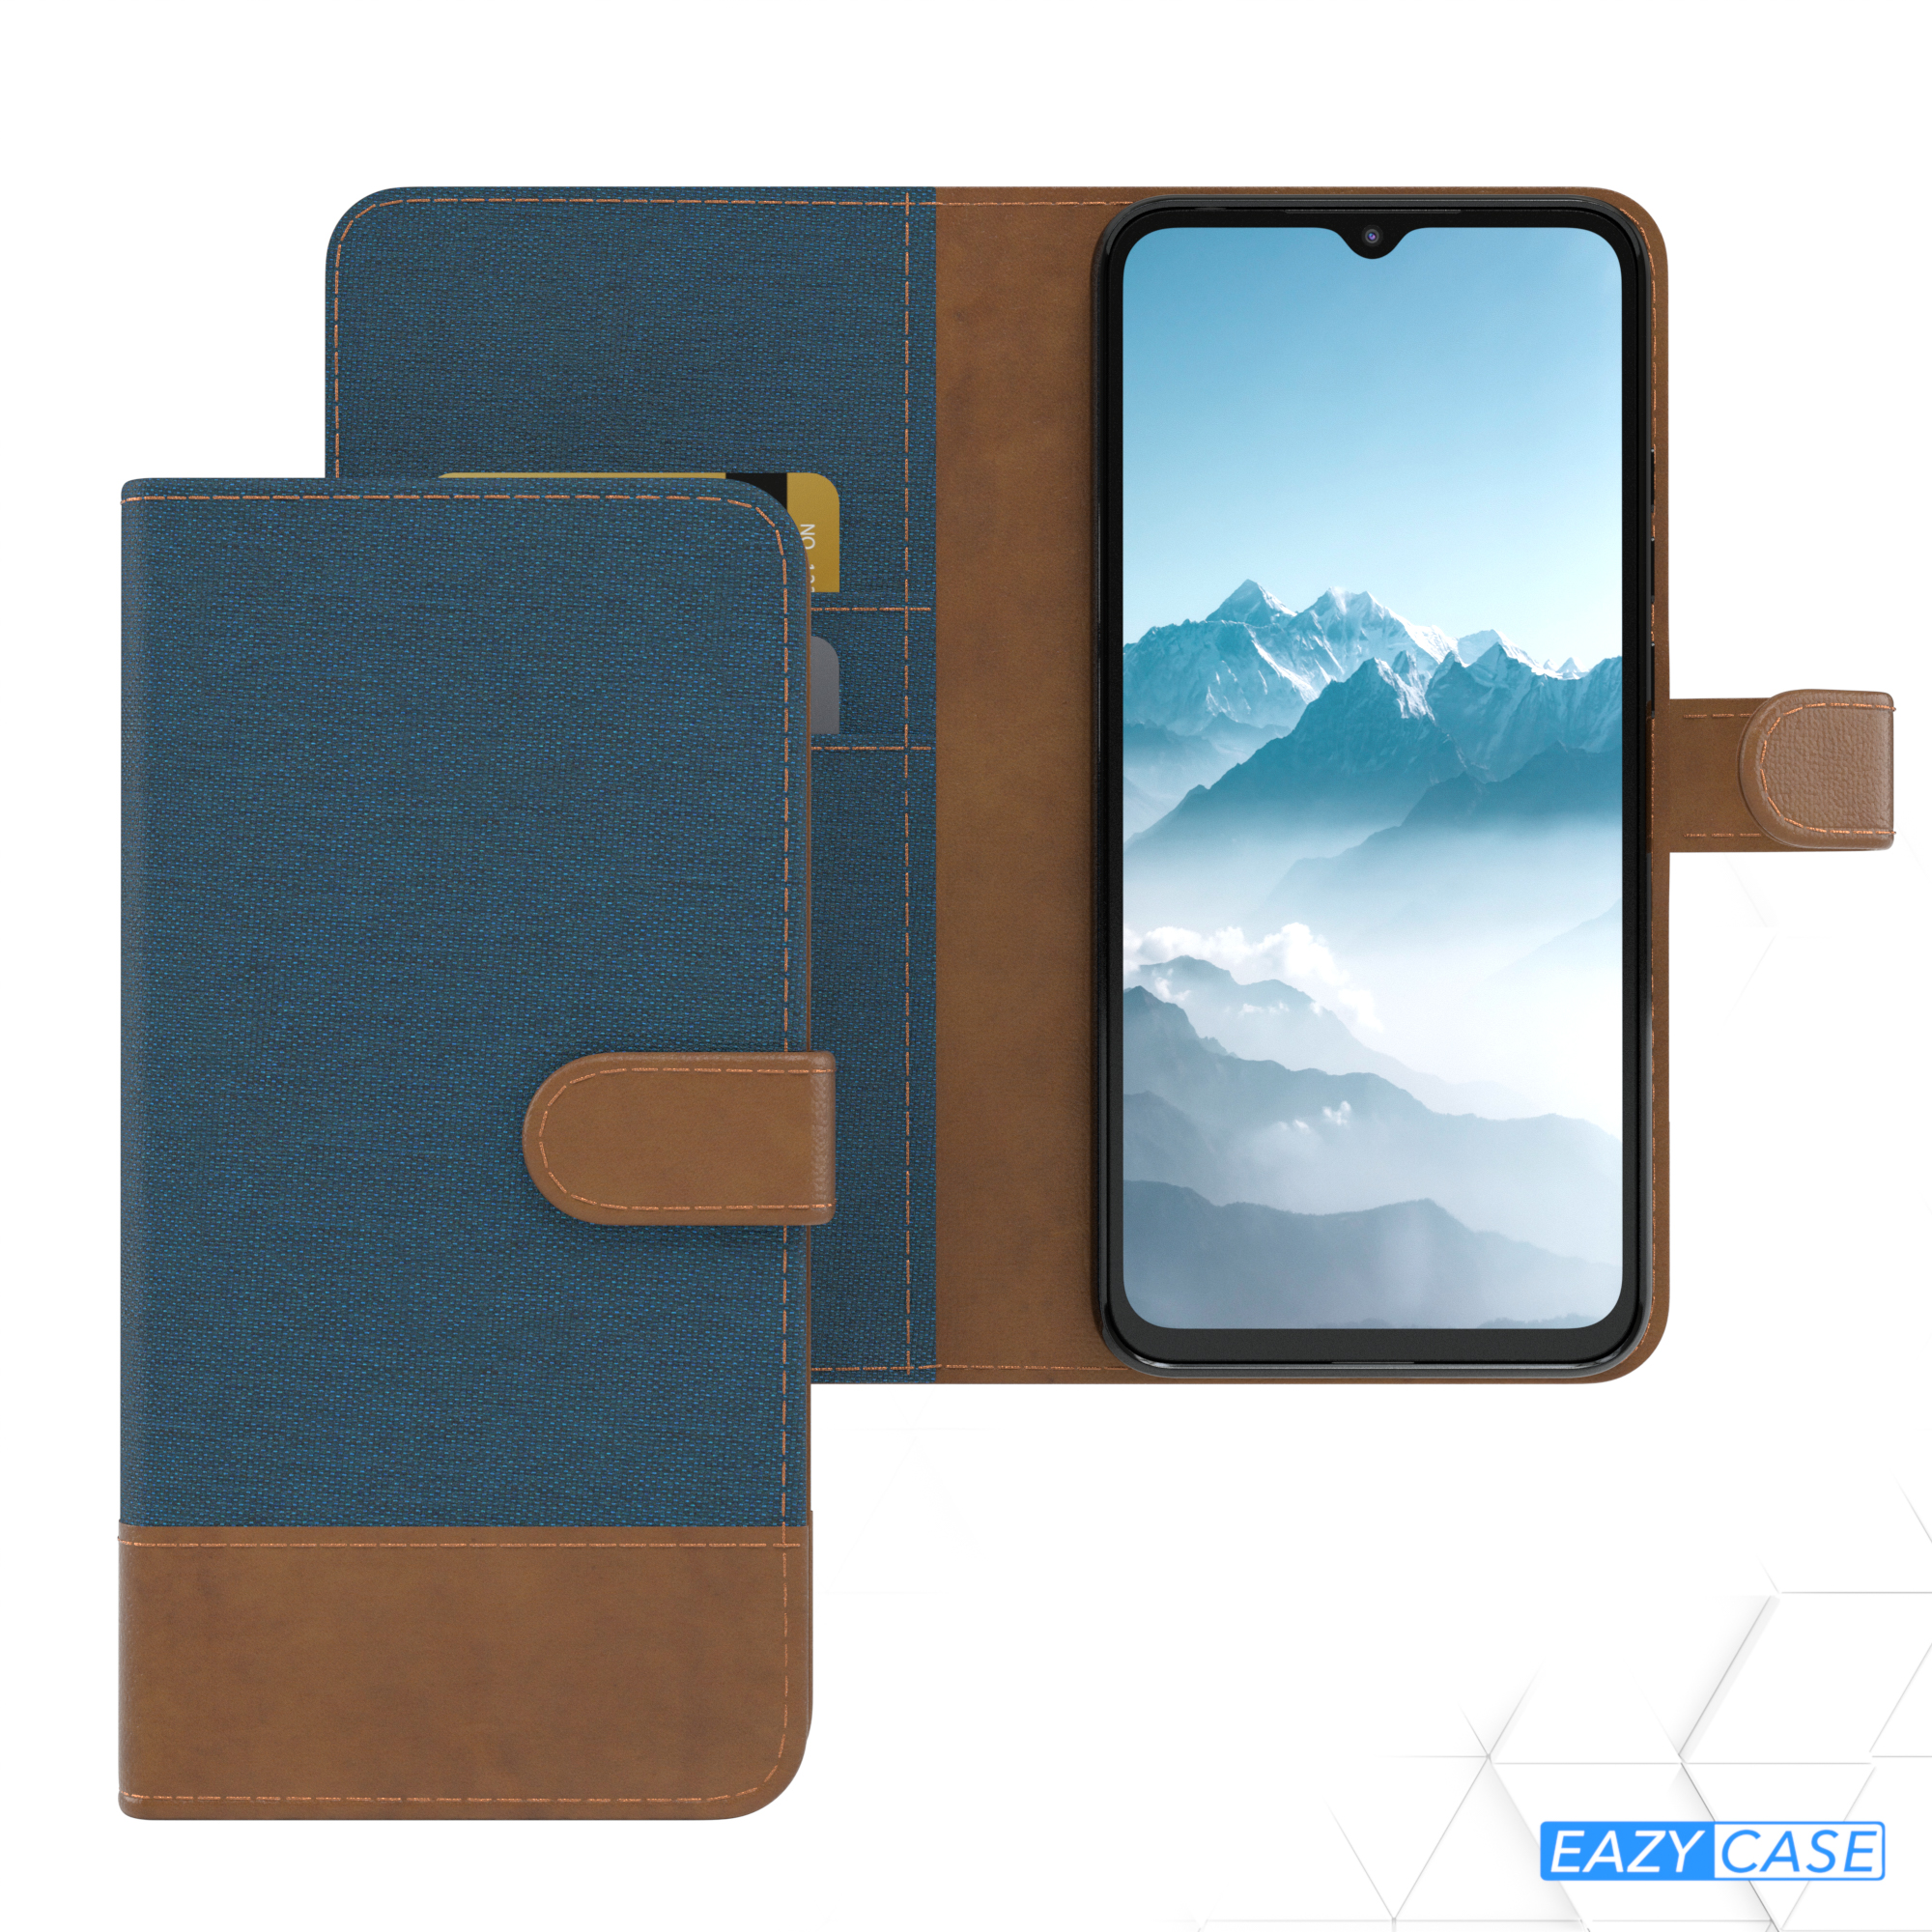 EAZY CASE Bookstyle Blau Xiaomi, Bookcover, Klapphülle Kartenfach, mit Redmi 9C, Jeans